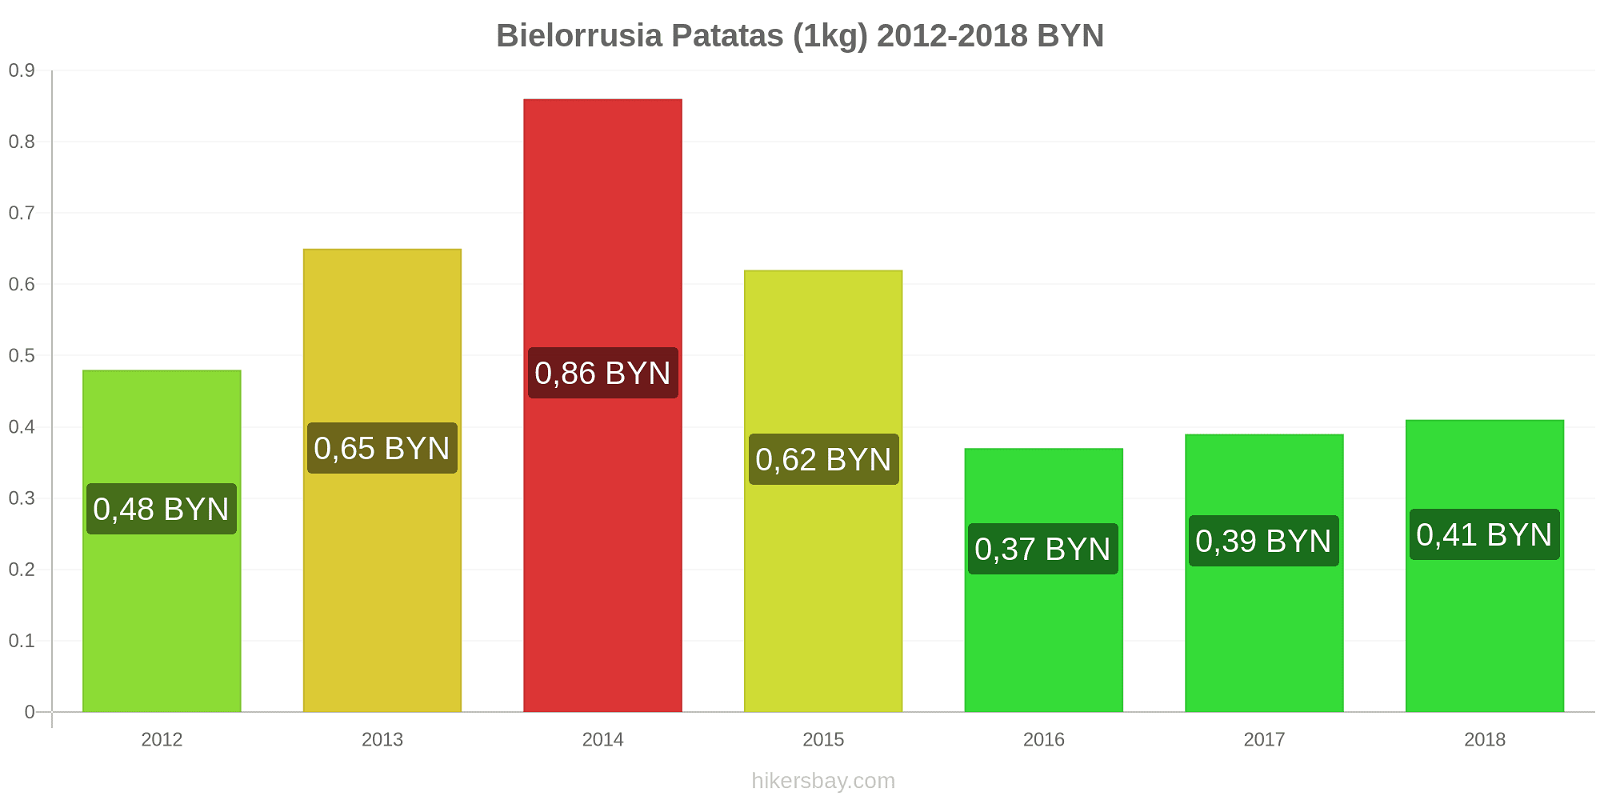 Bielorrusia cambios de precios Patatas (1kg) hikersbay.com